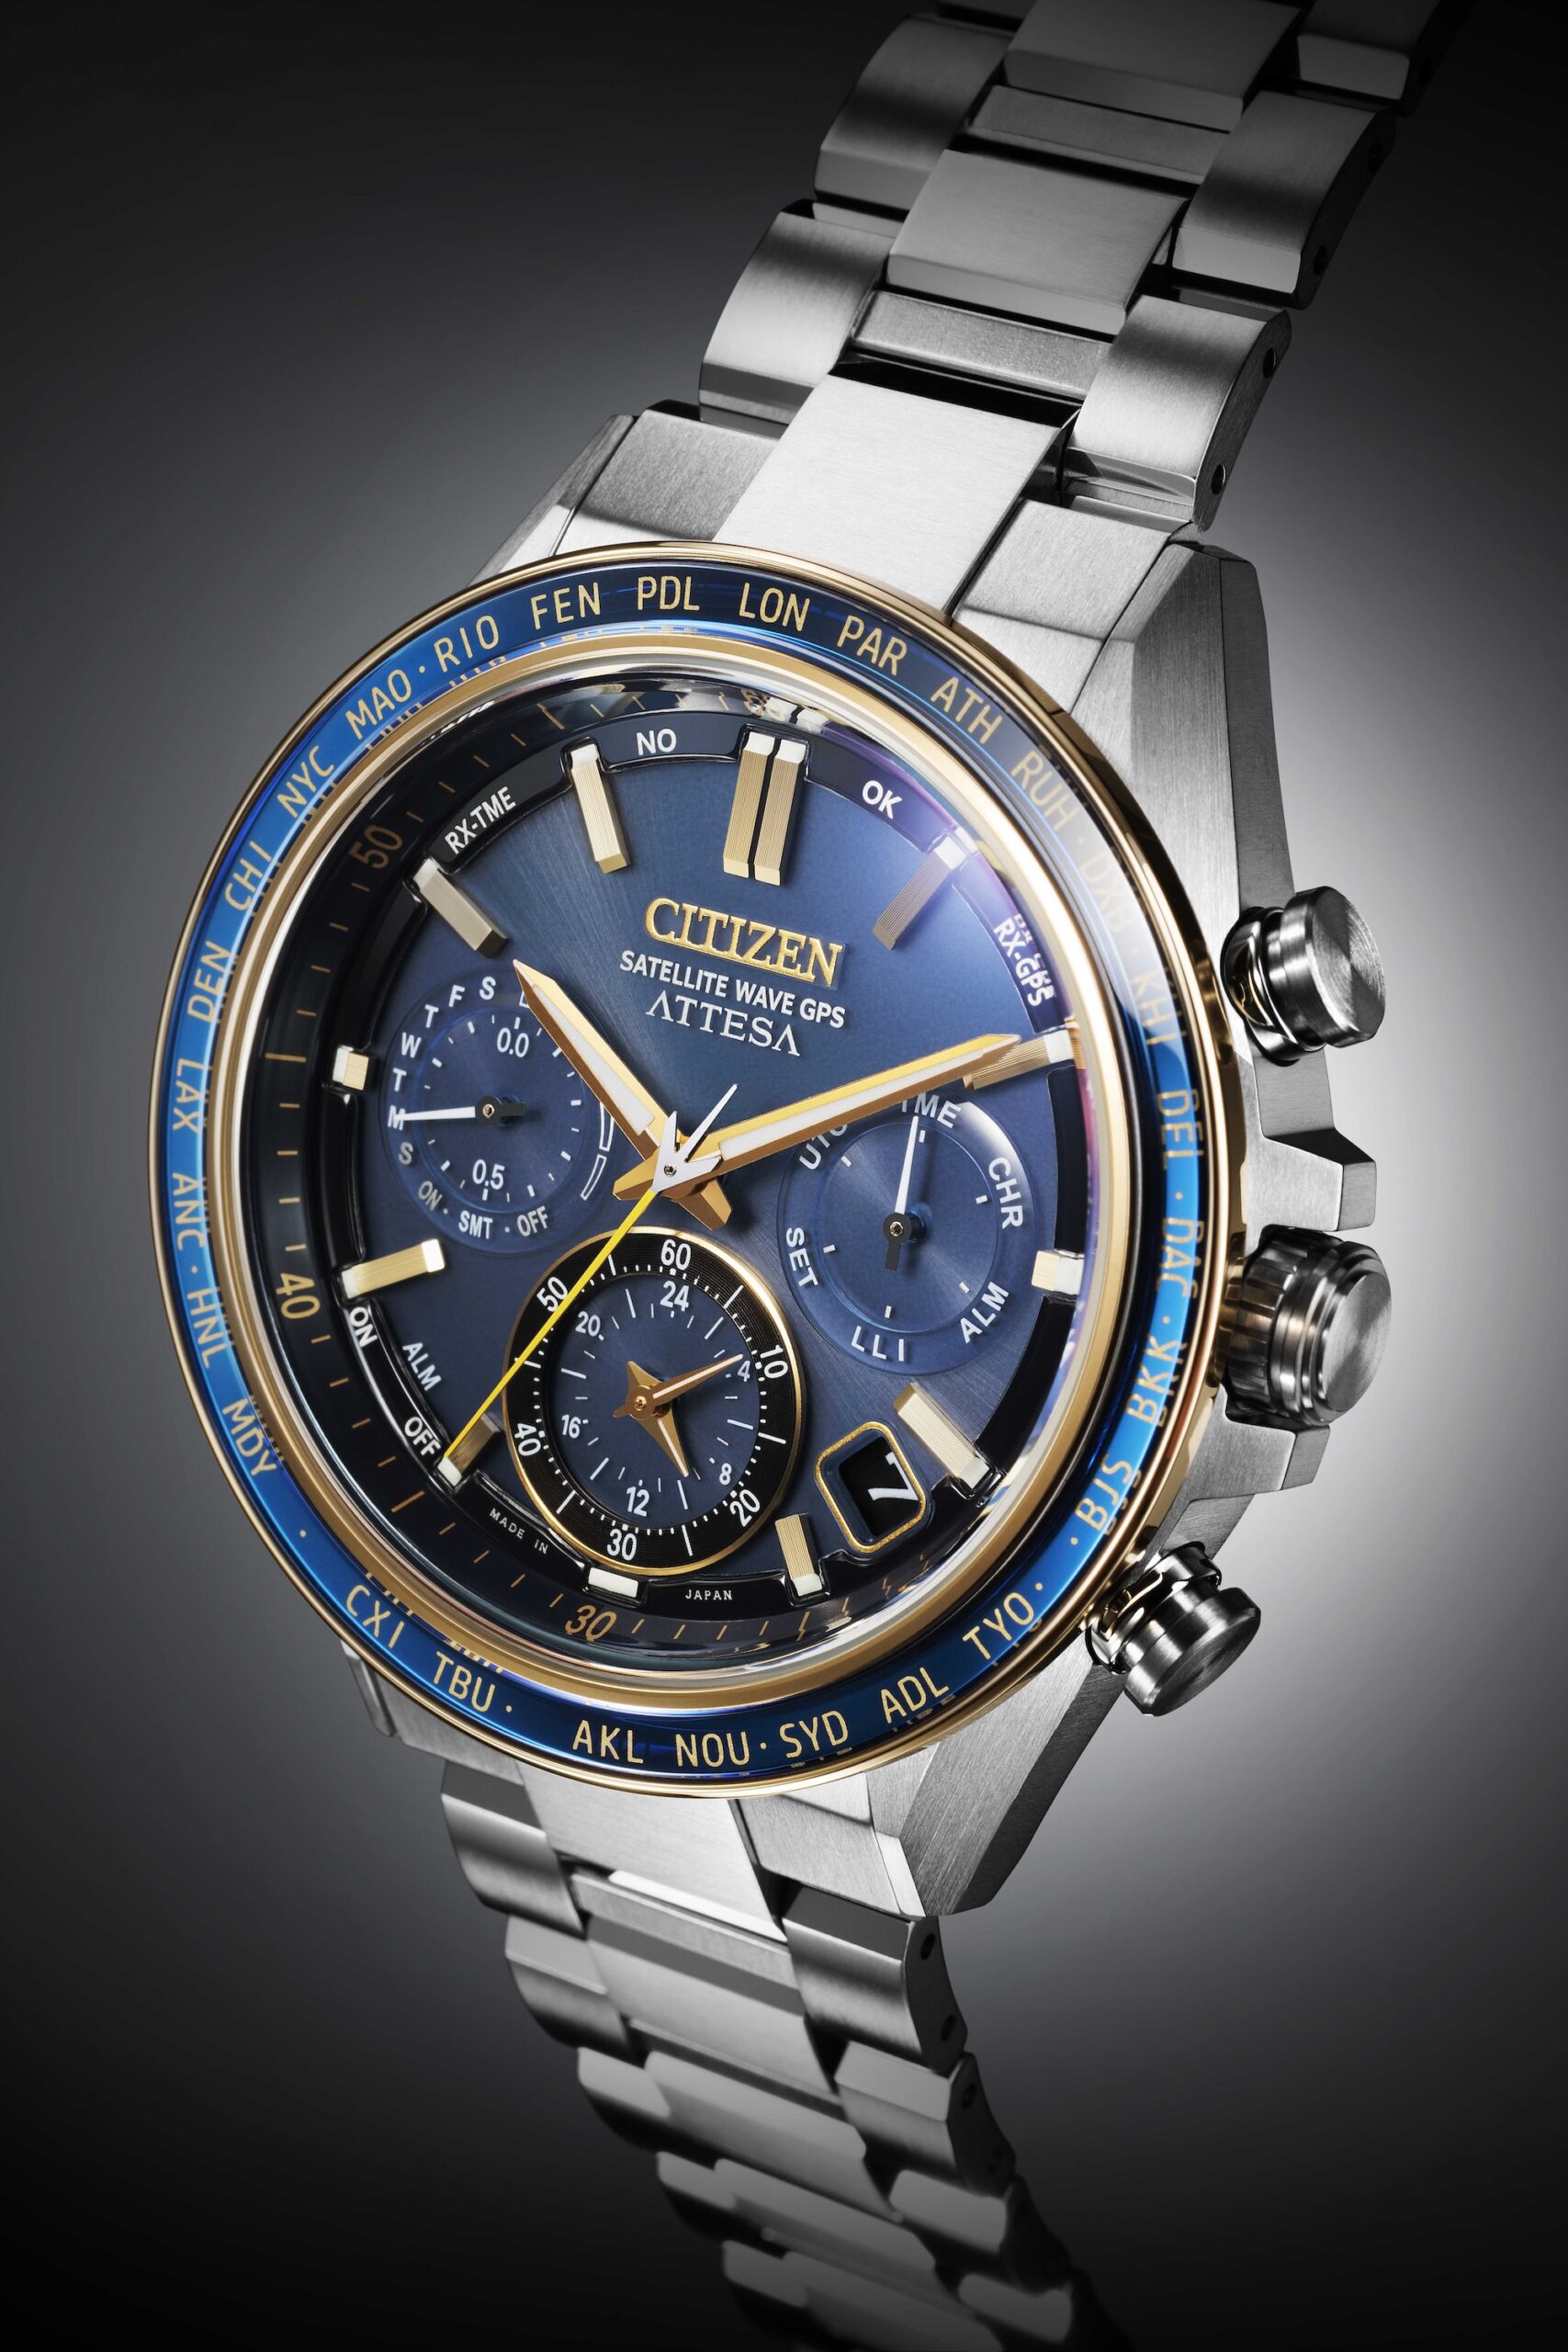 Отправляйтесь к звездам с коллекцией супертитановых часов ATTESA от Citizen